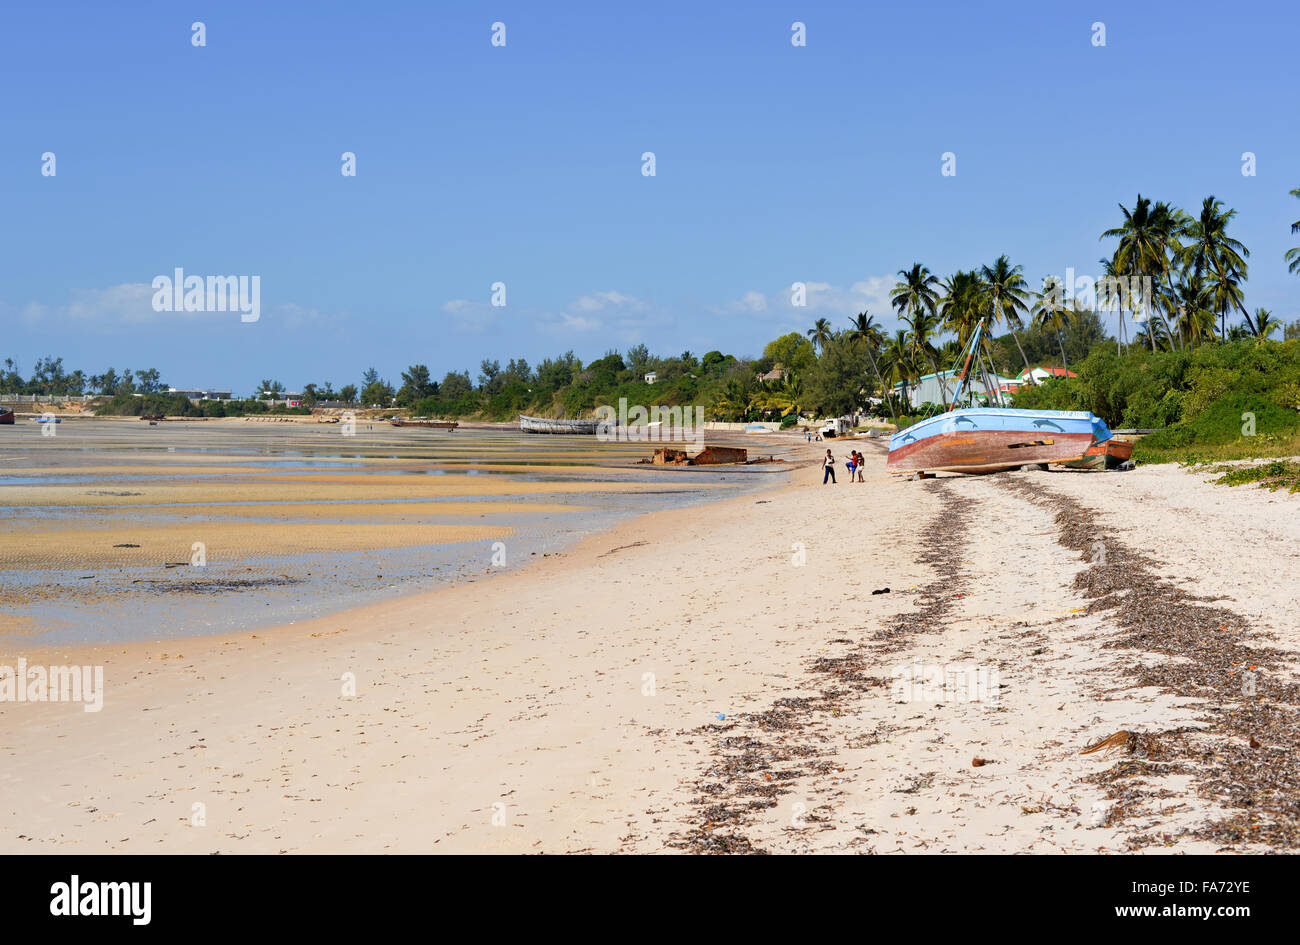 Vista panoramica di Vilanculos Beach in Mozambico durante la bassa marea. Si possono vedere i vari dhows appoggiata nella sabbia. Foto Stock